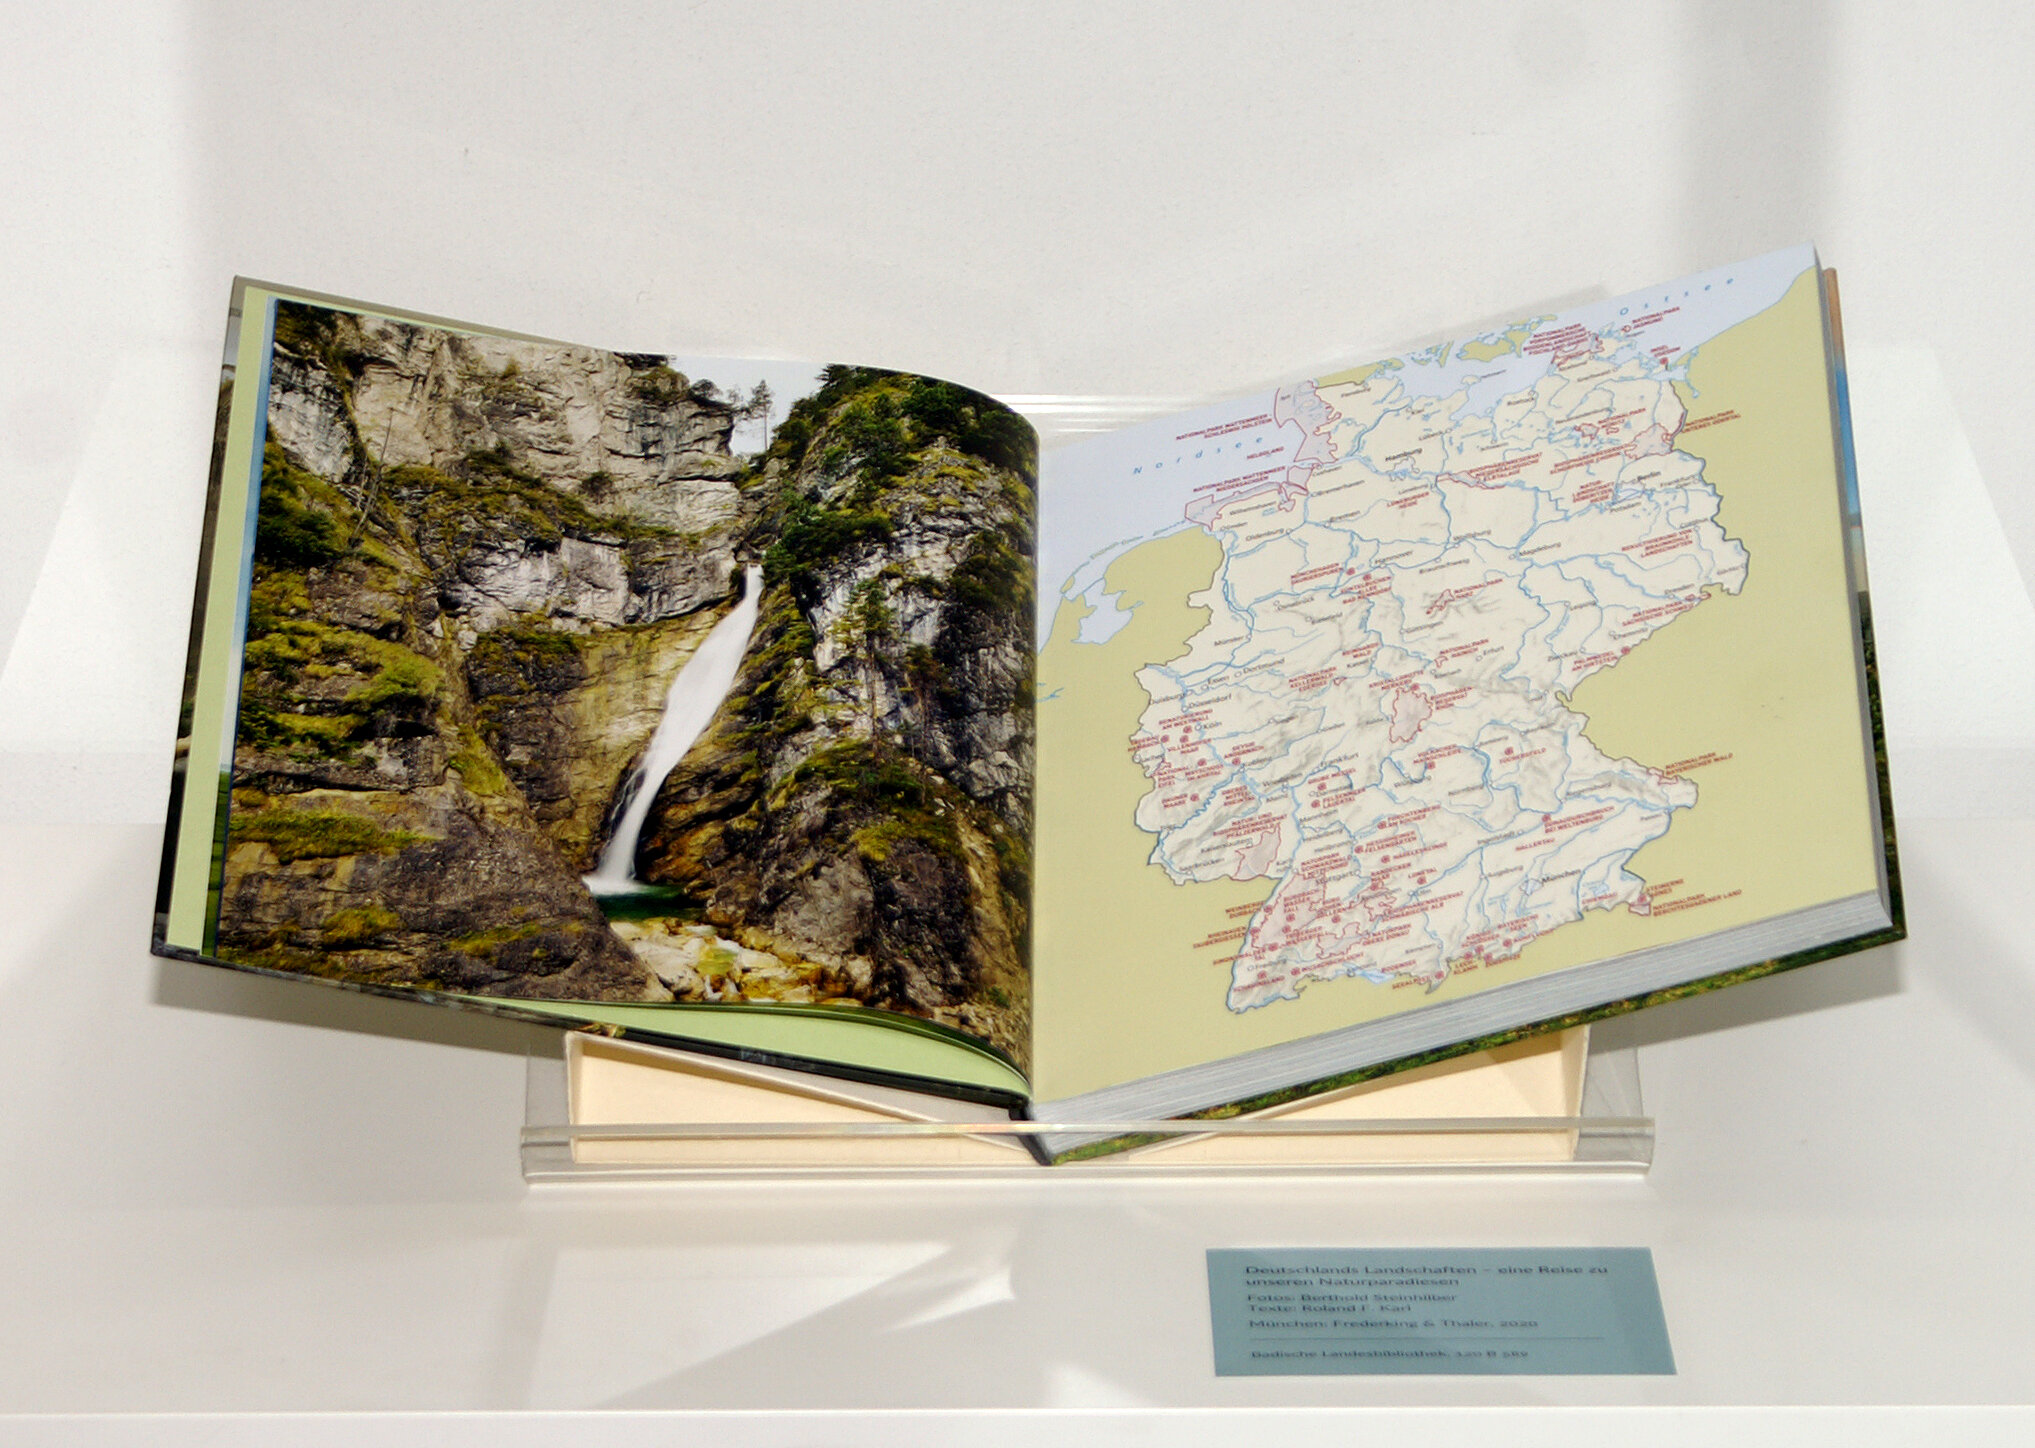 Doppelseite aus "Deutschlands Landschaften – eine Reise zu unseren Naturparadiesen", abgebildet links ist ein grün bewachsener Wasserfall, rechts eine Karte von Deutschland.